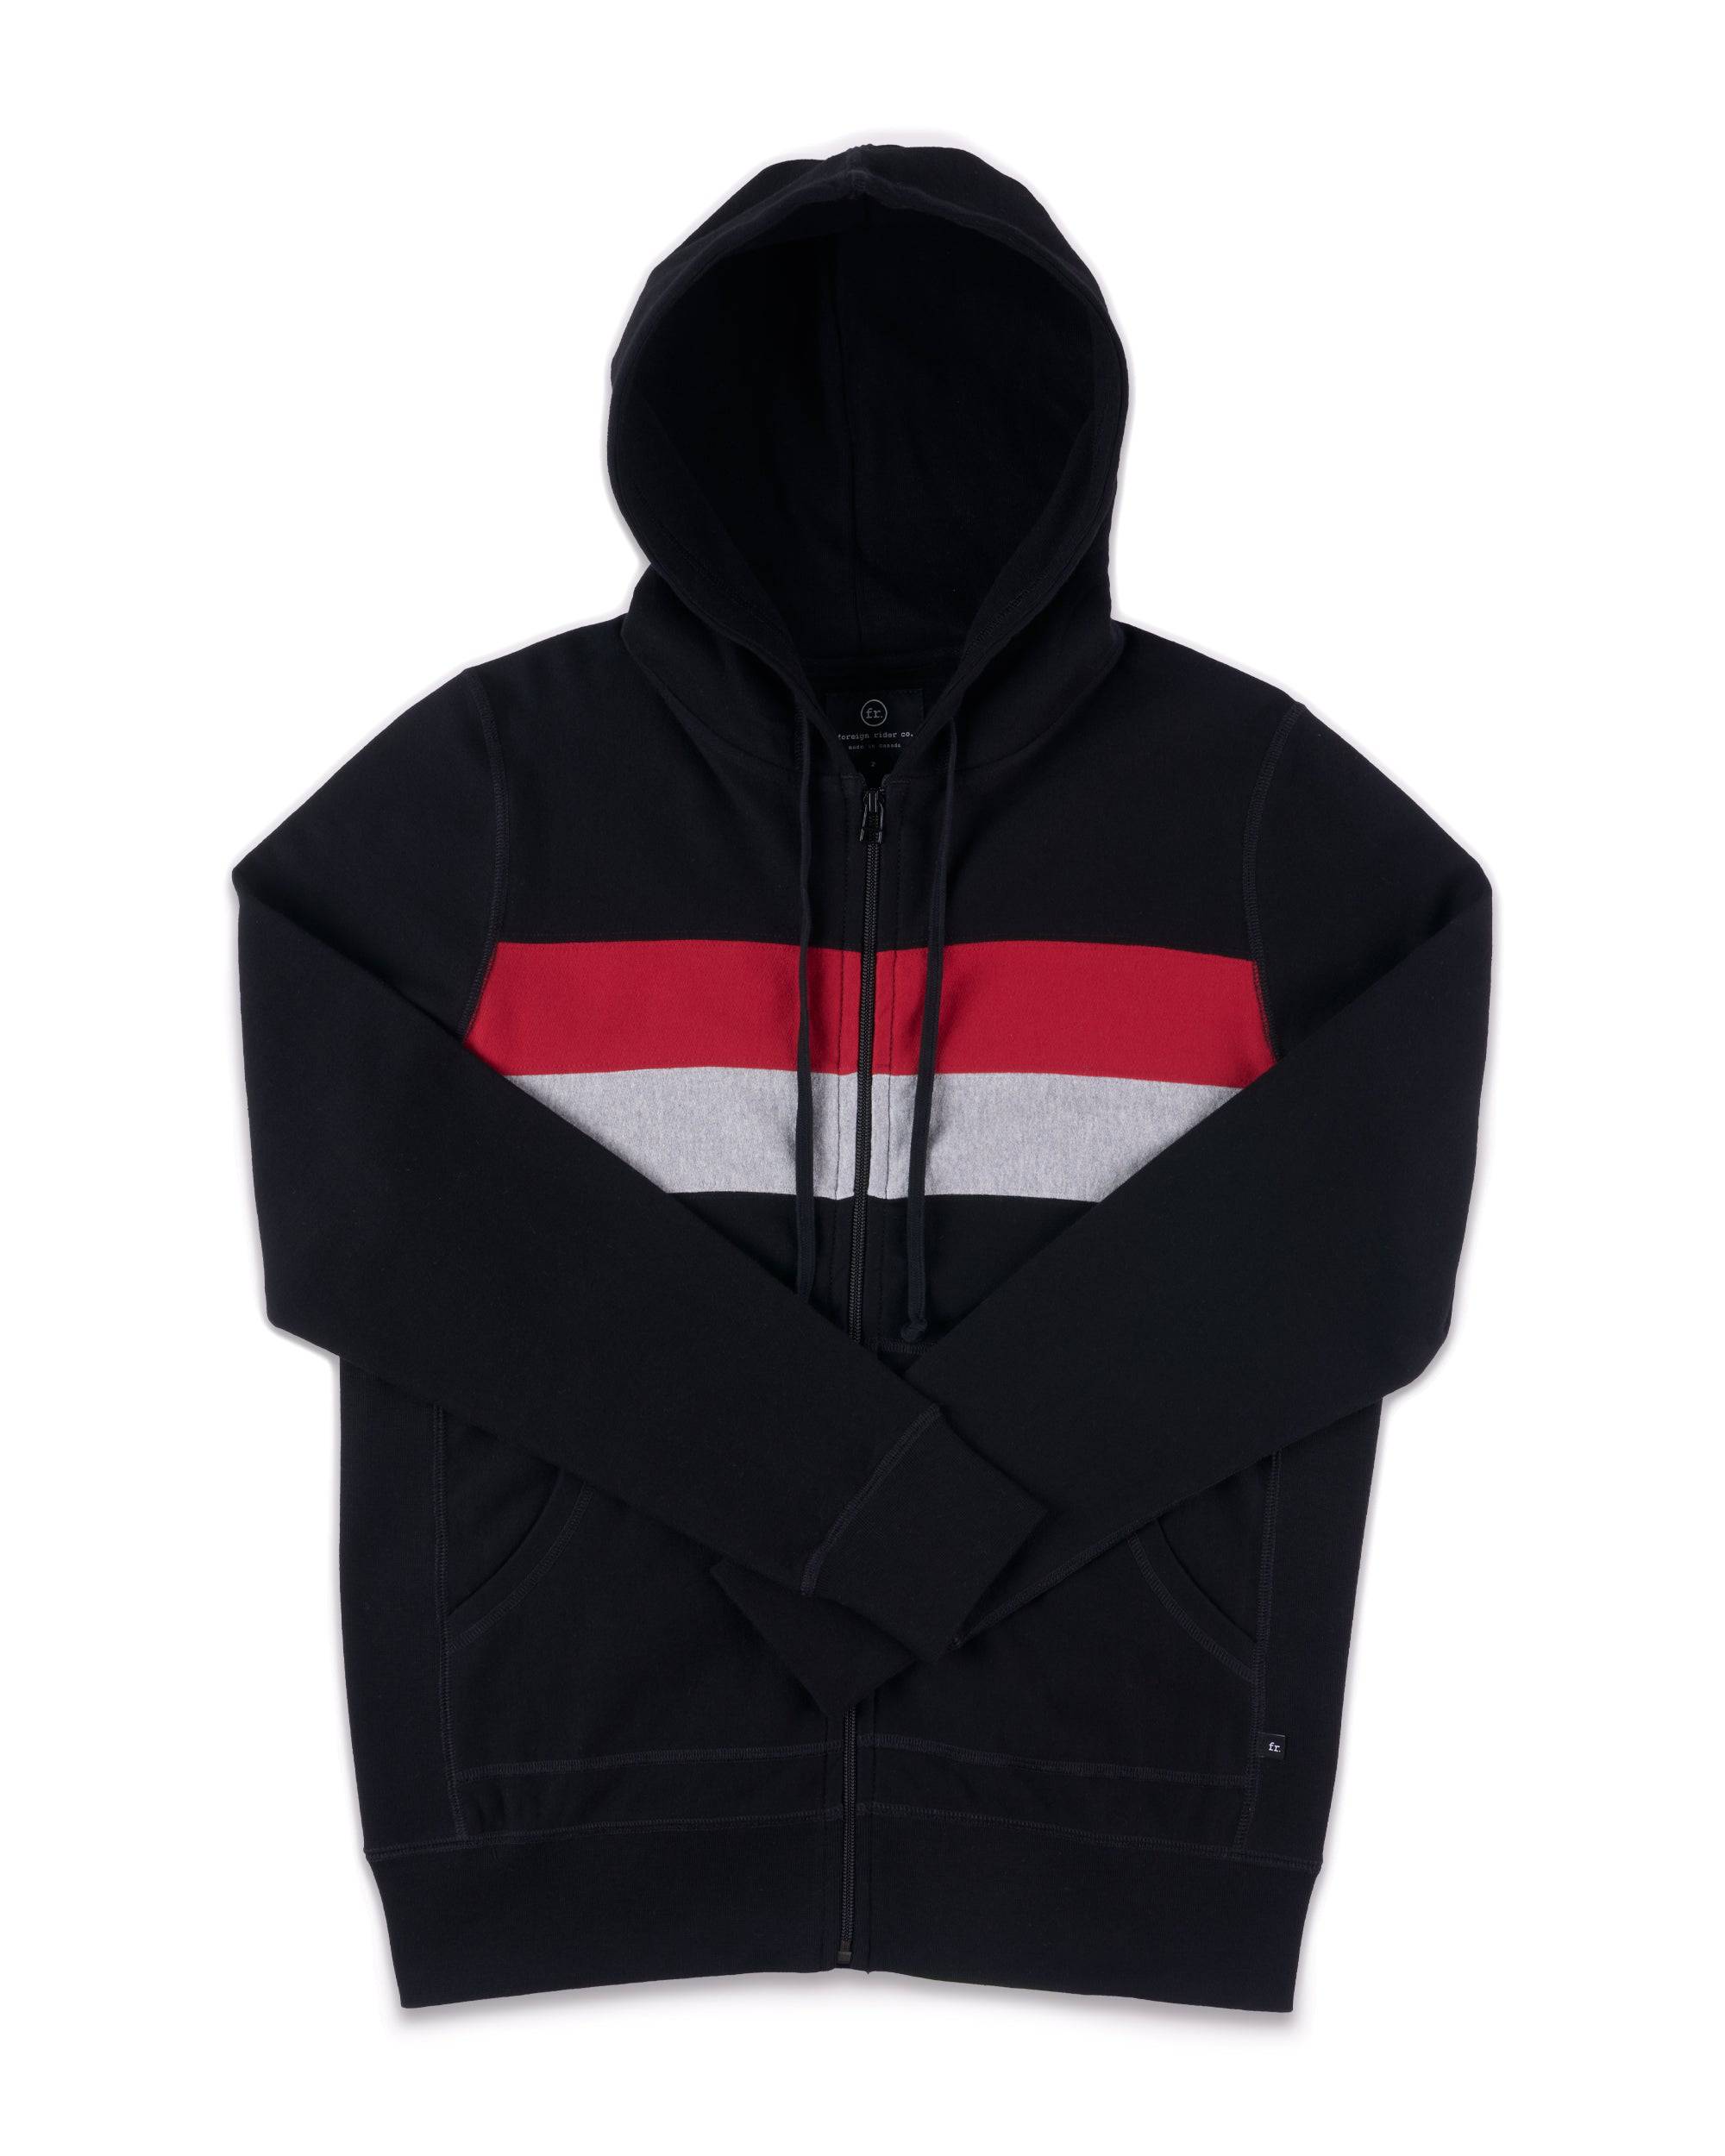 Organic cotton full-zip hoodie